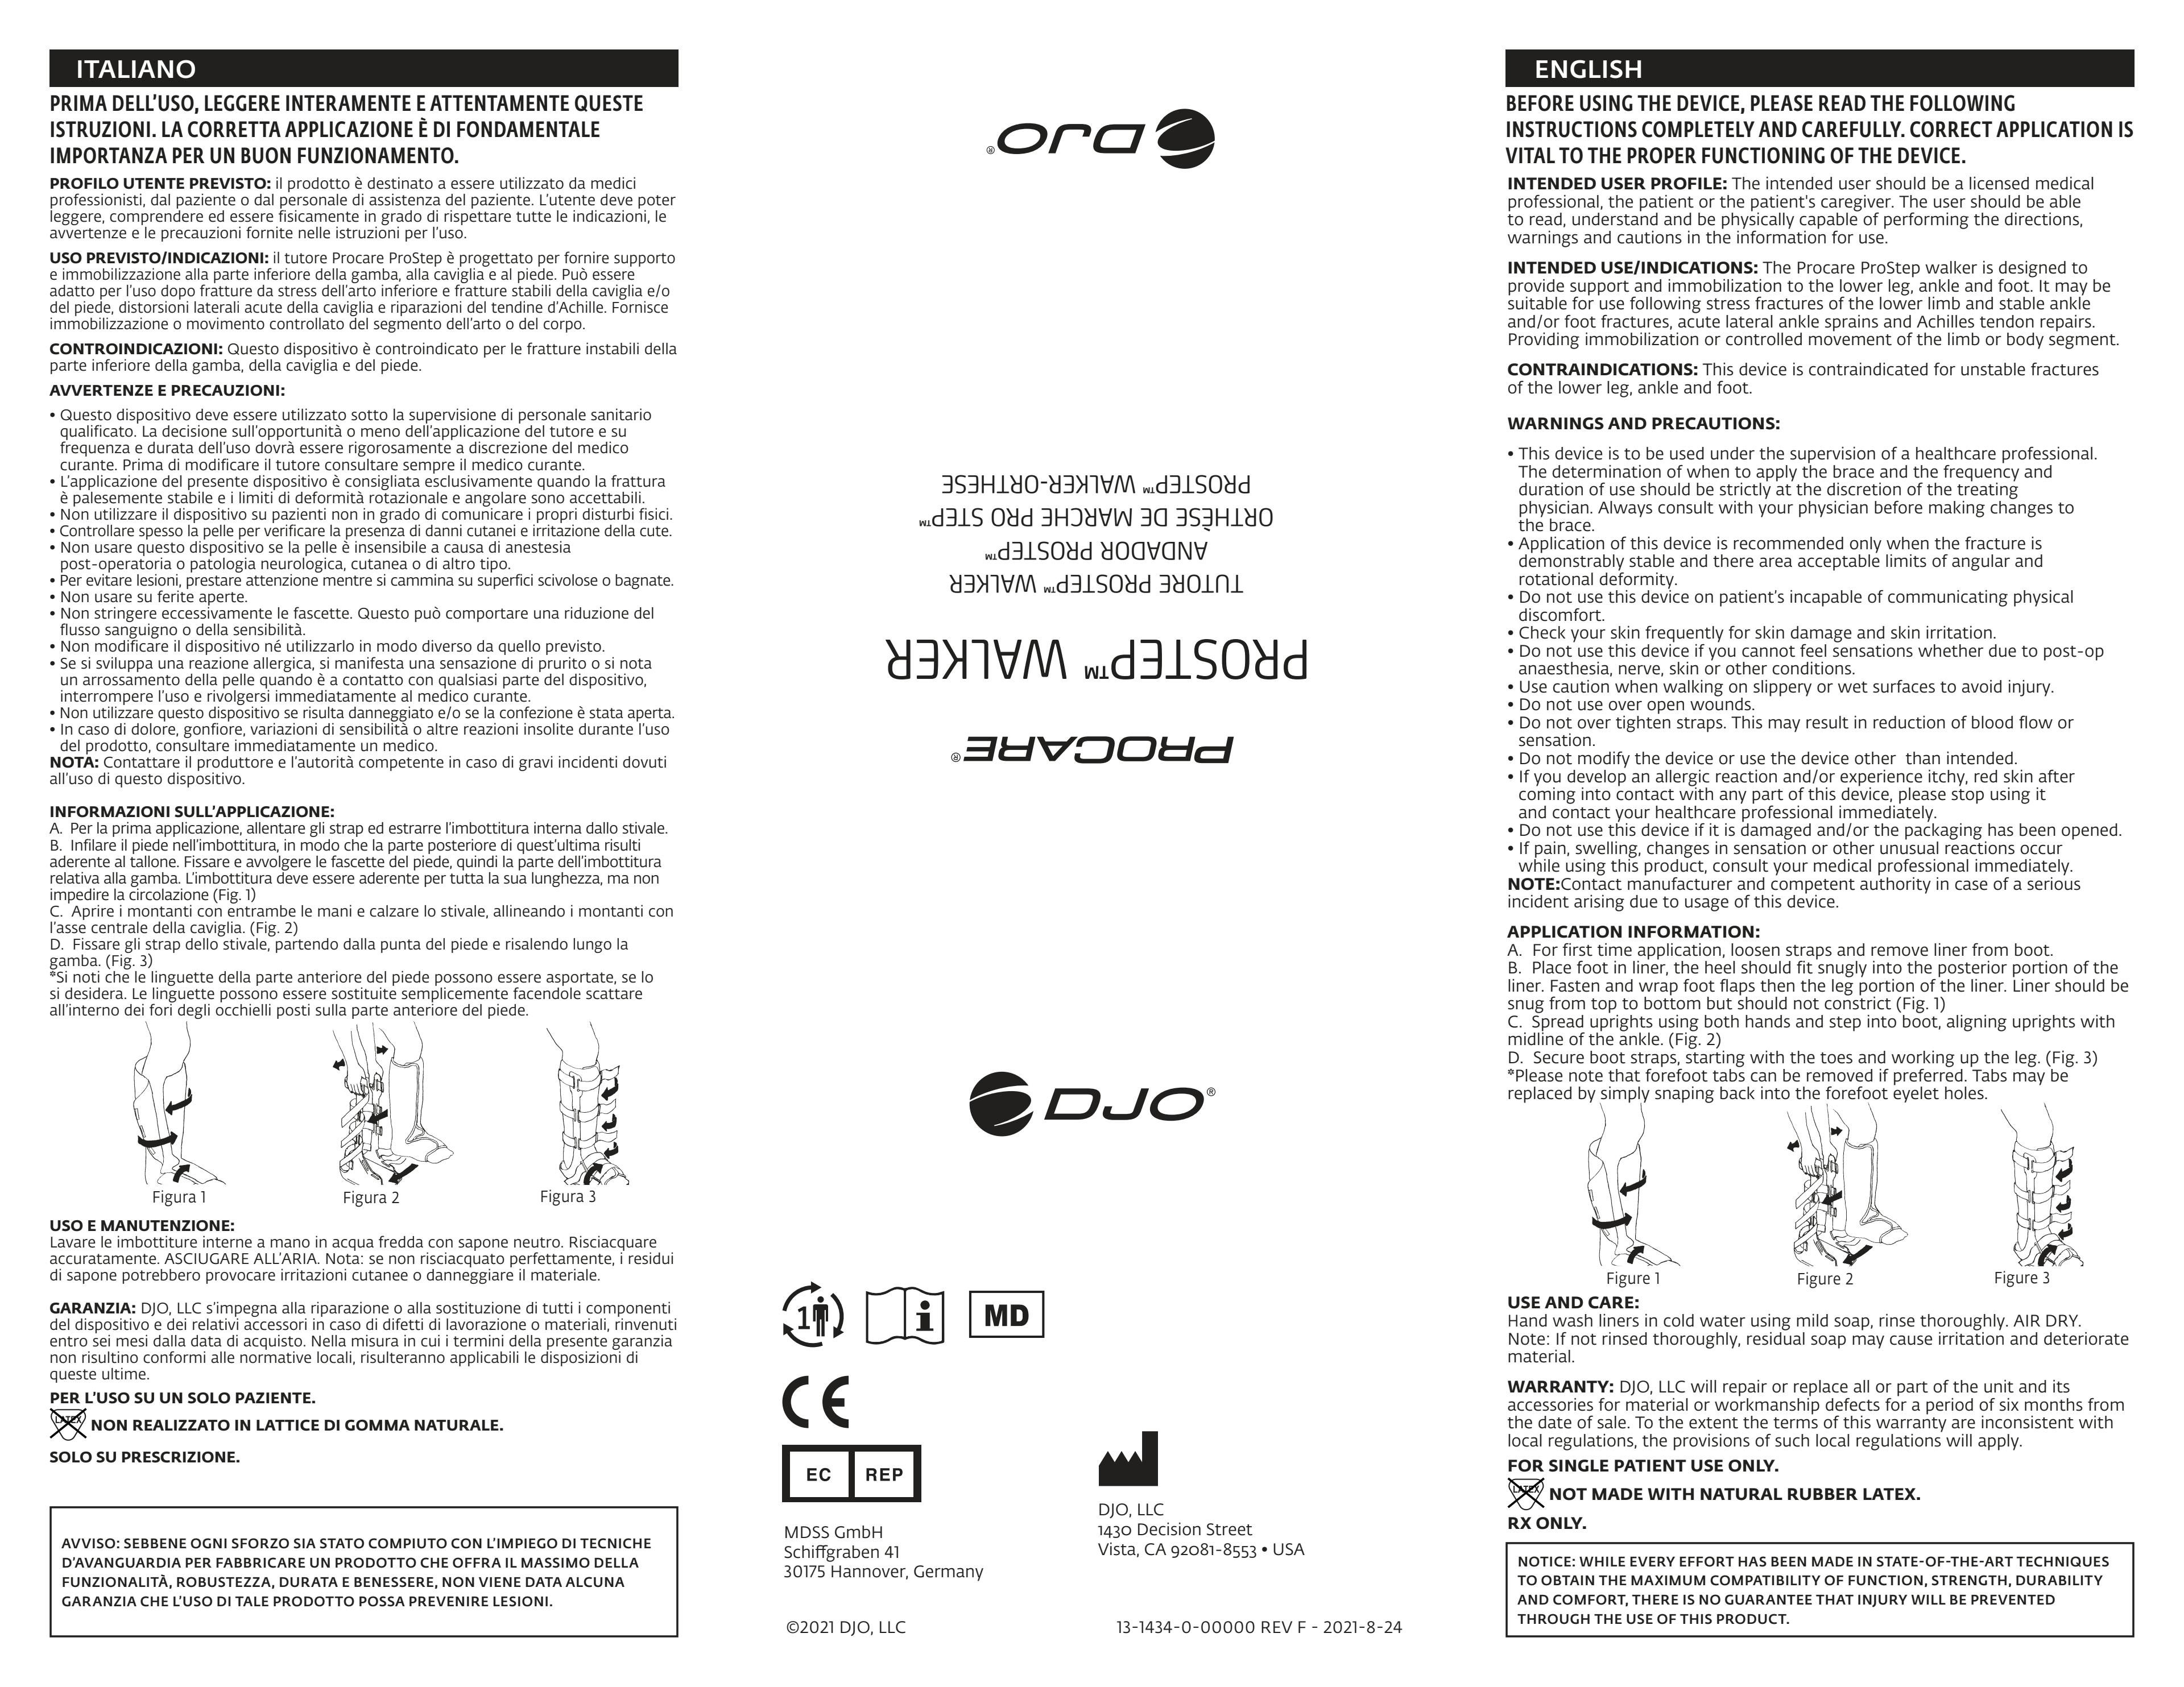 Gebrauchsanleitung-PROCARE Prostep-13-1434-0-00000.pdf